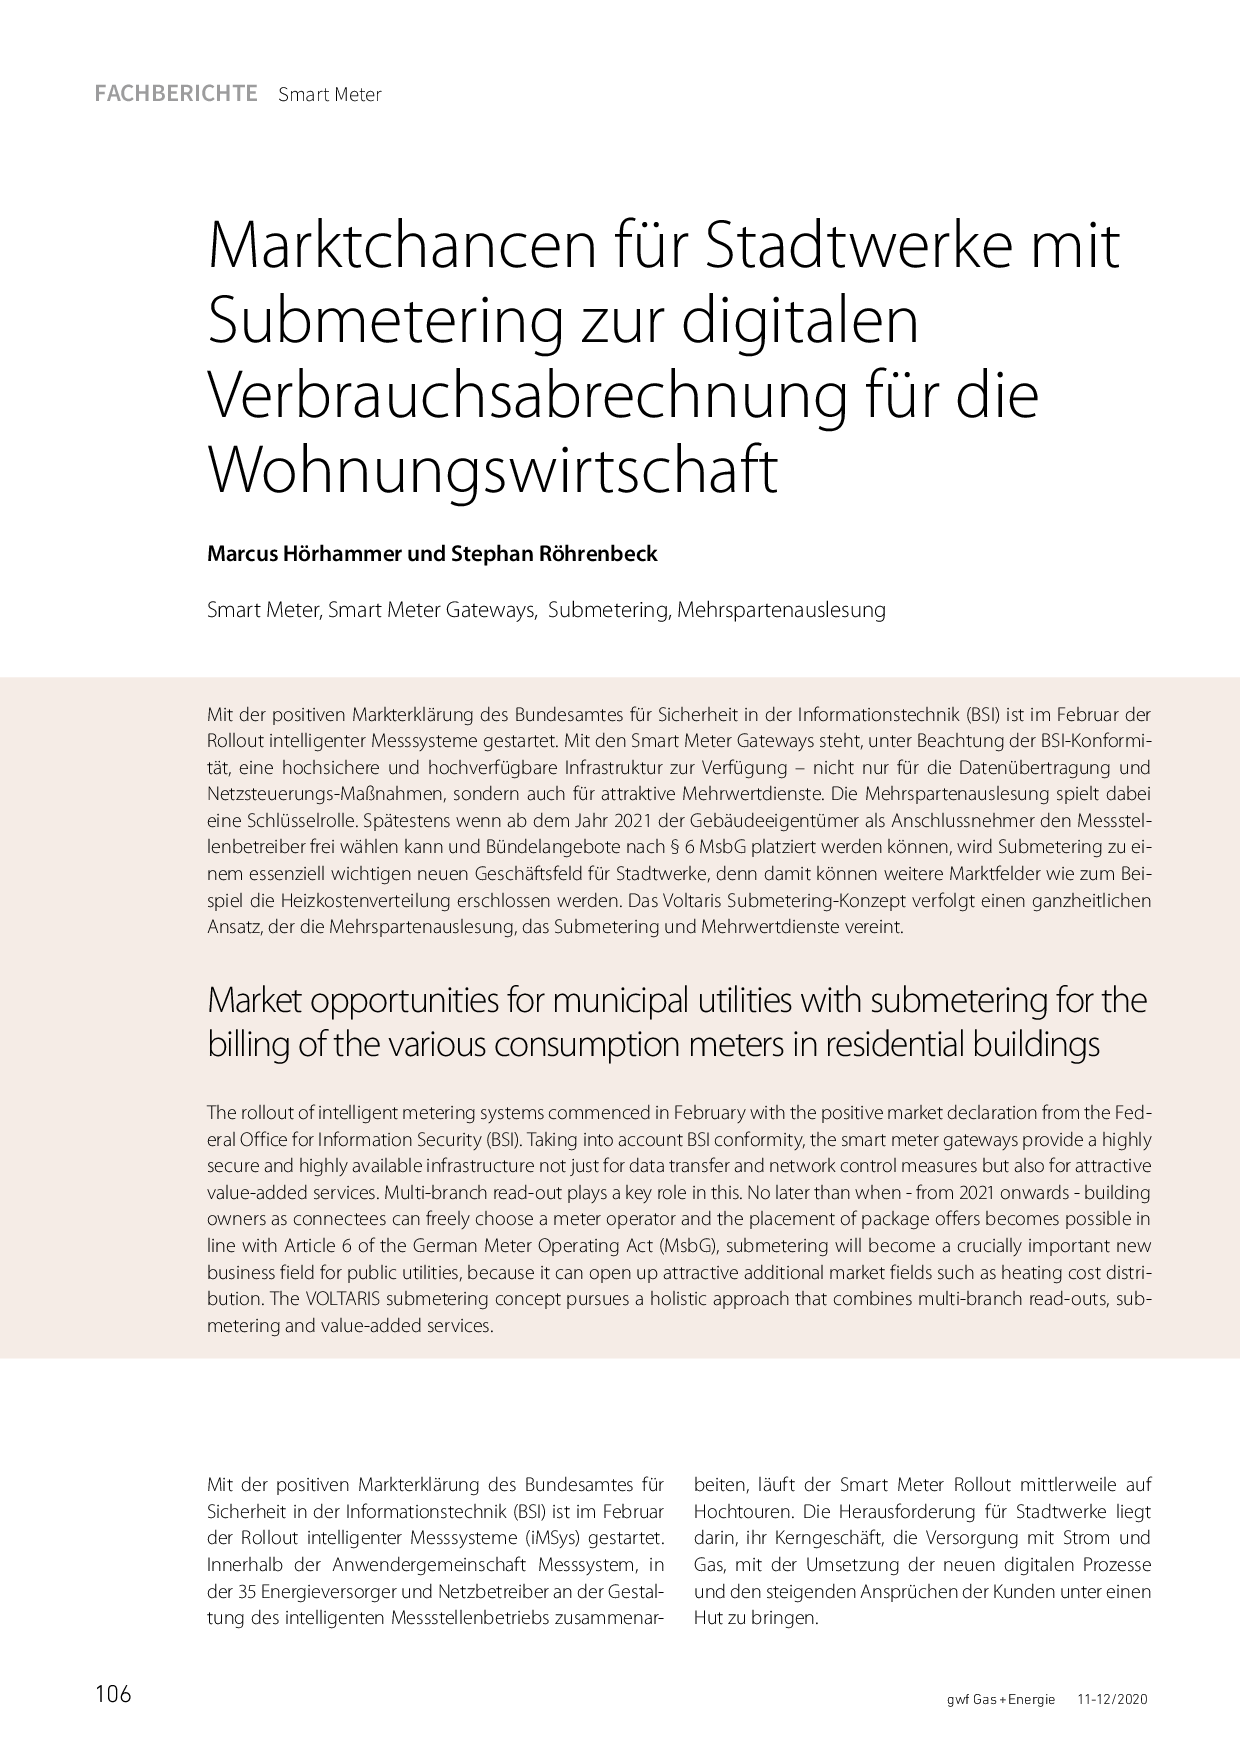 Marktchancen für Stadtwerke mit Submetering zur digitalen Verbrauchsabrechnung für die Wohnungswirtschaft